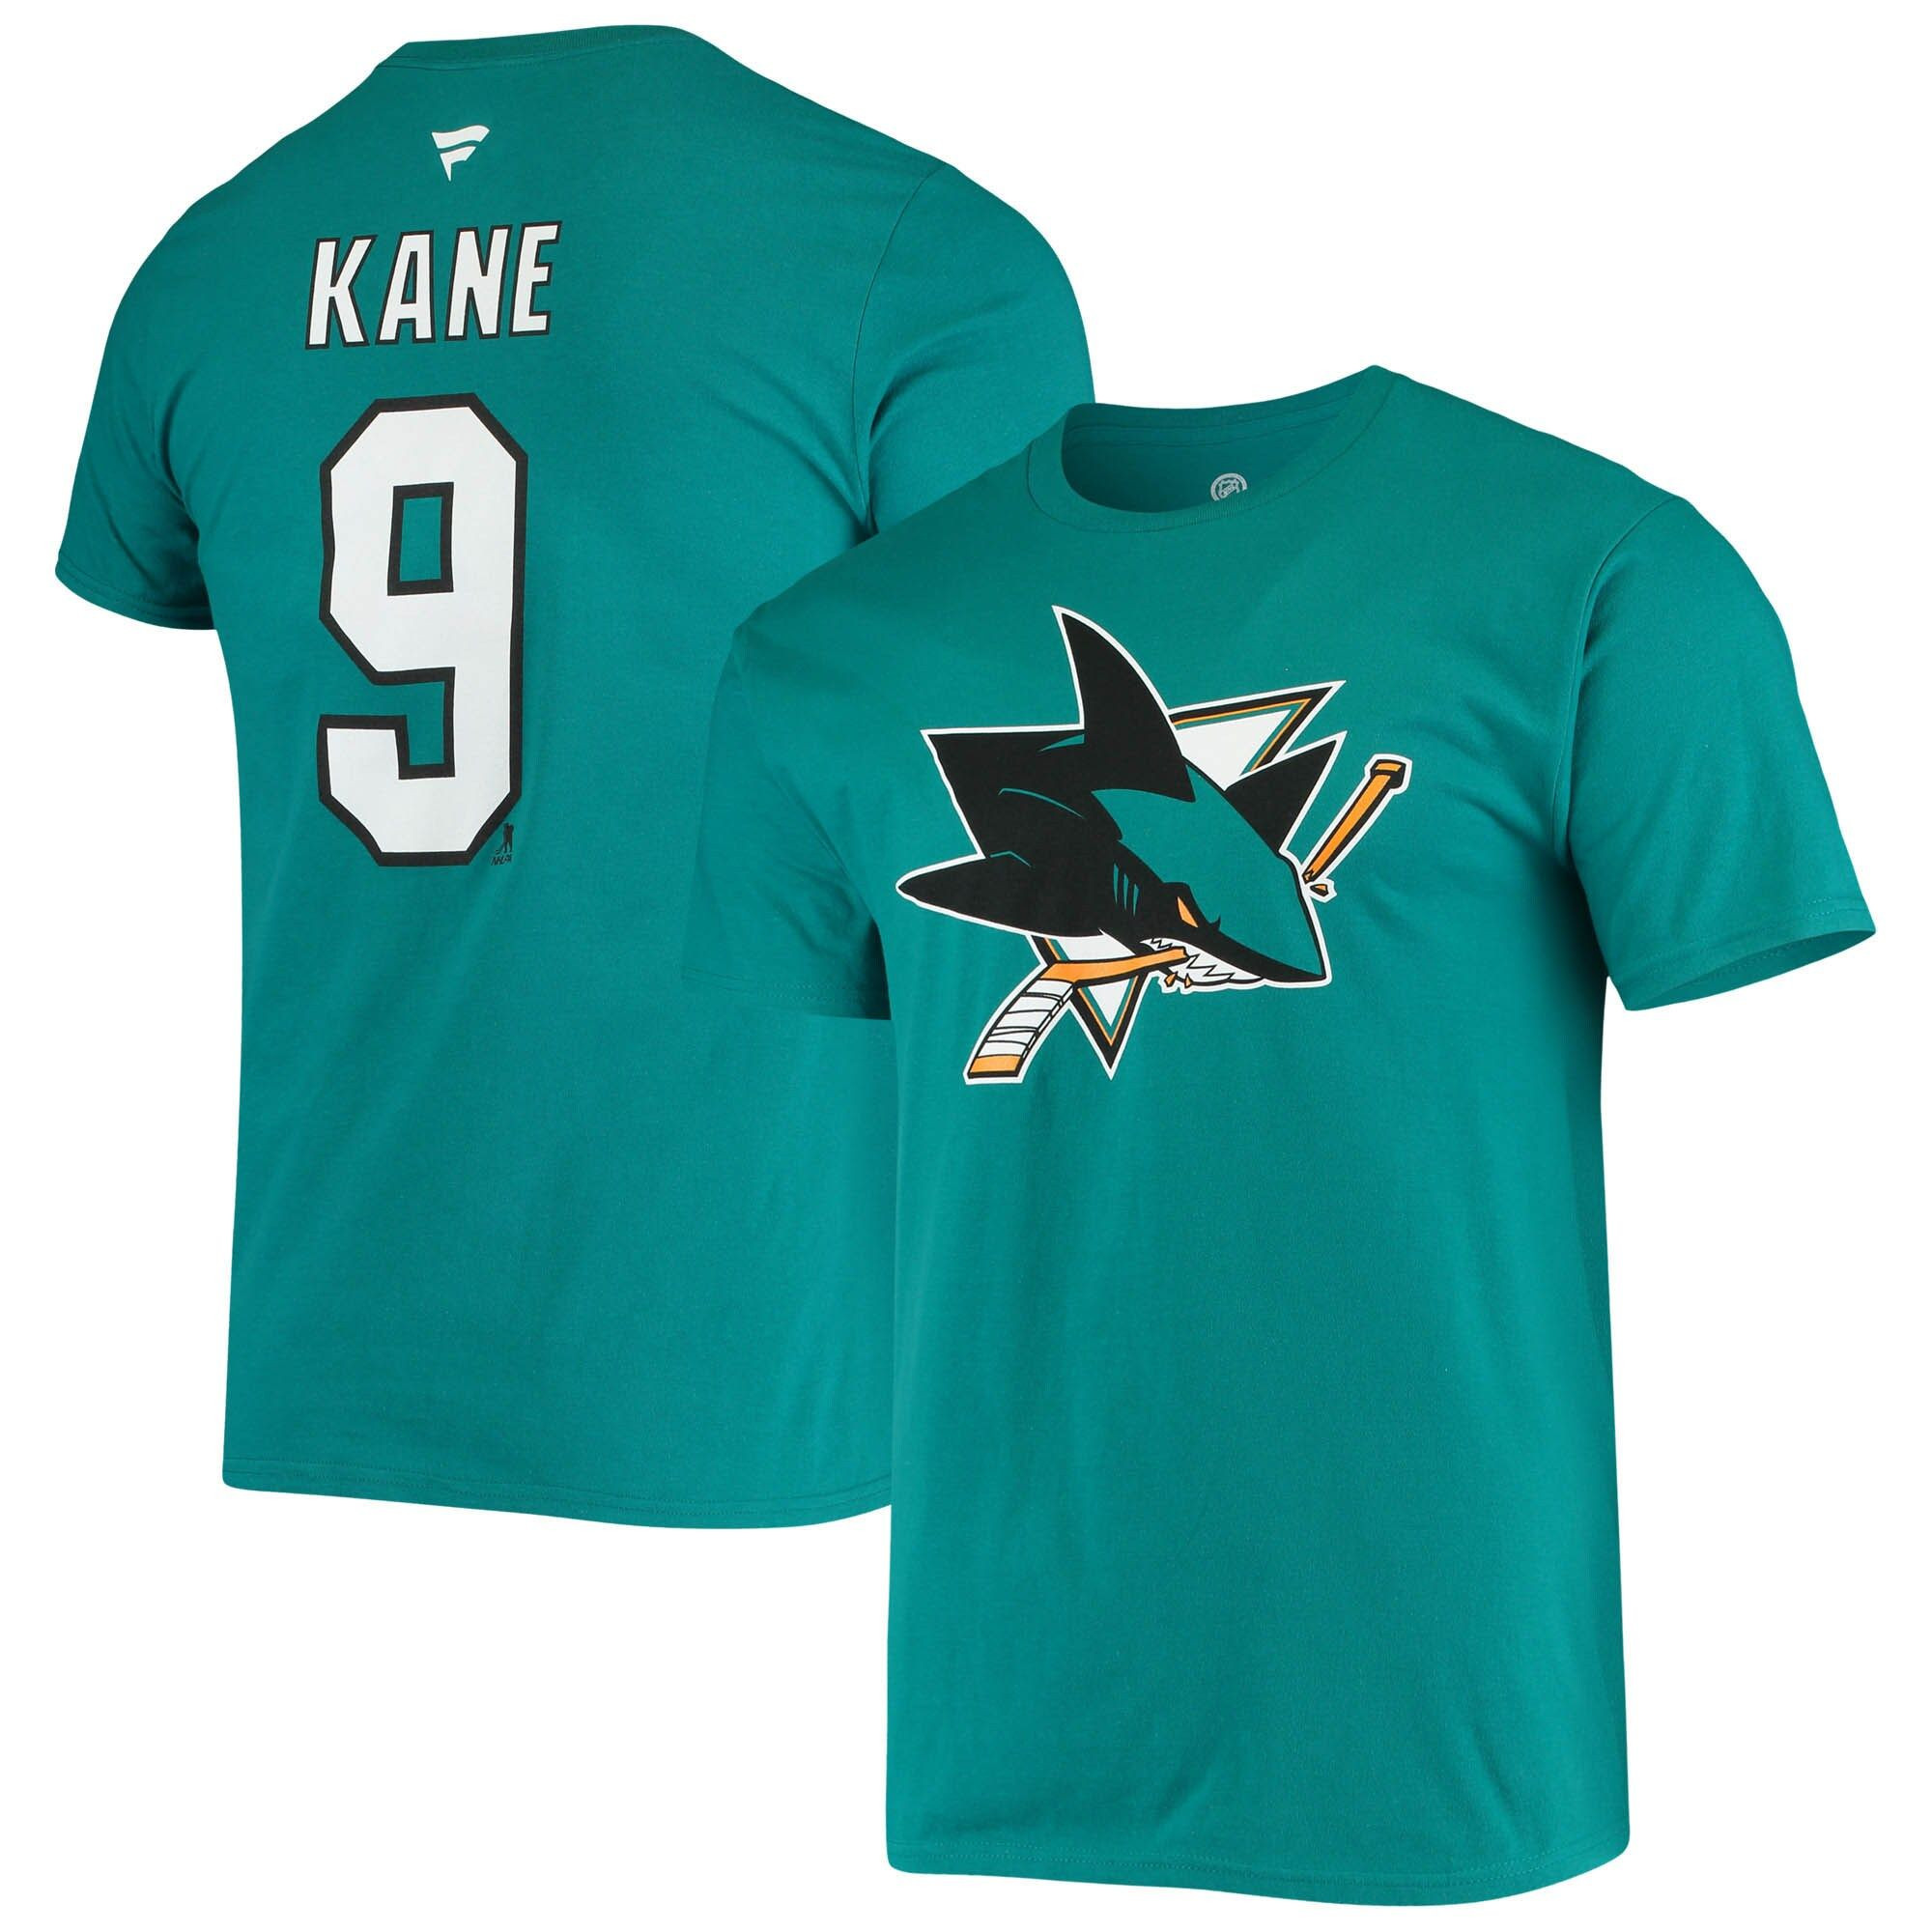 Men's Fanatics Branded Evander Kane Teal San Jose Sharks Player Name and Number T-Shirt